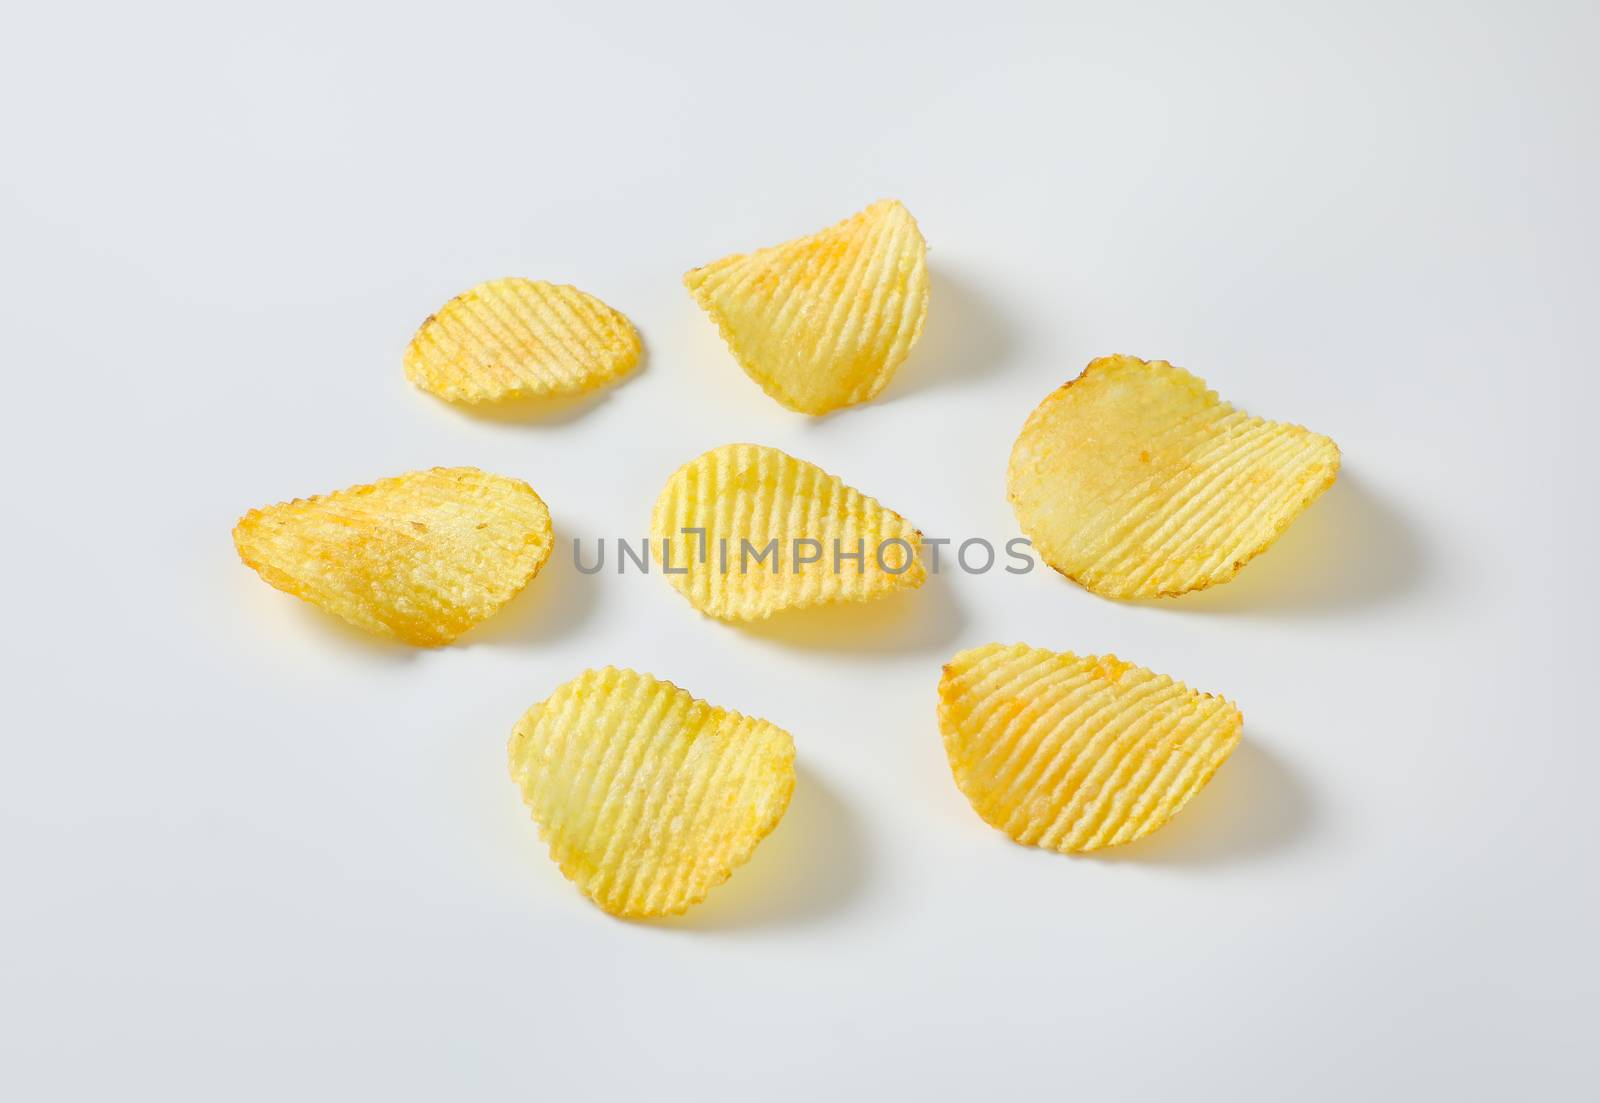 Six thin ridged potato chips